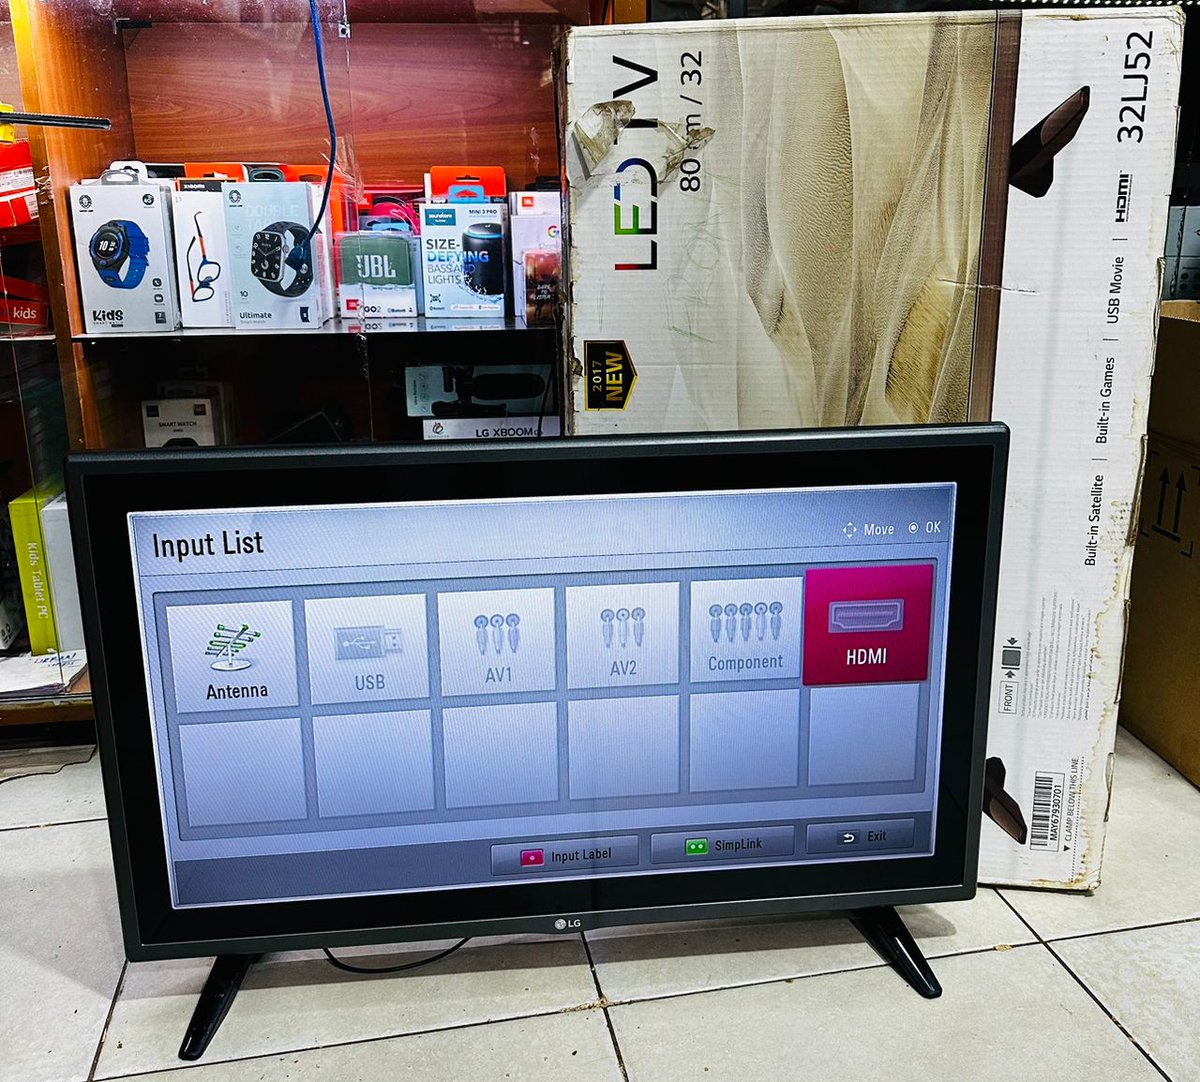 Quick Sale - LG 32' Digital LED TV (used) on sale at UGX 350,000/- 📍 Kooki Towers 📲 0759679038 #AuthenticGadgets